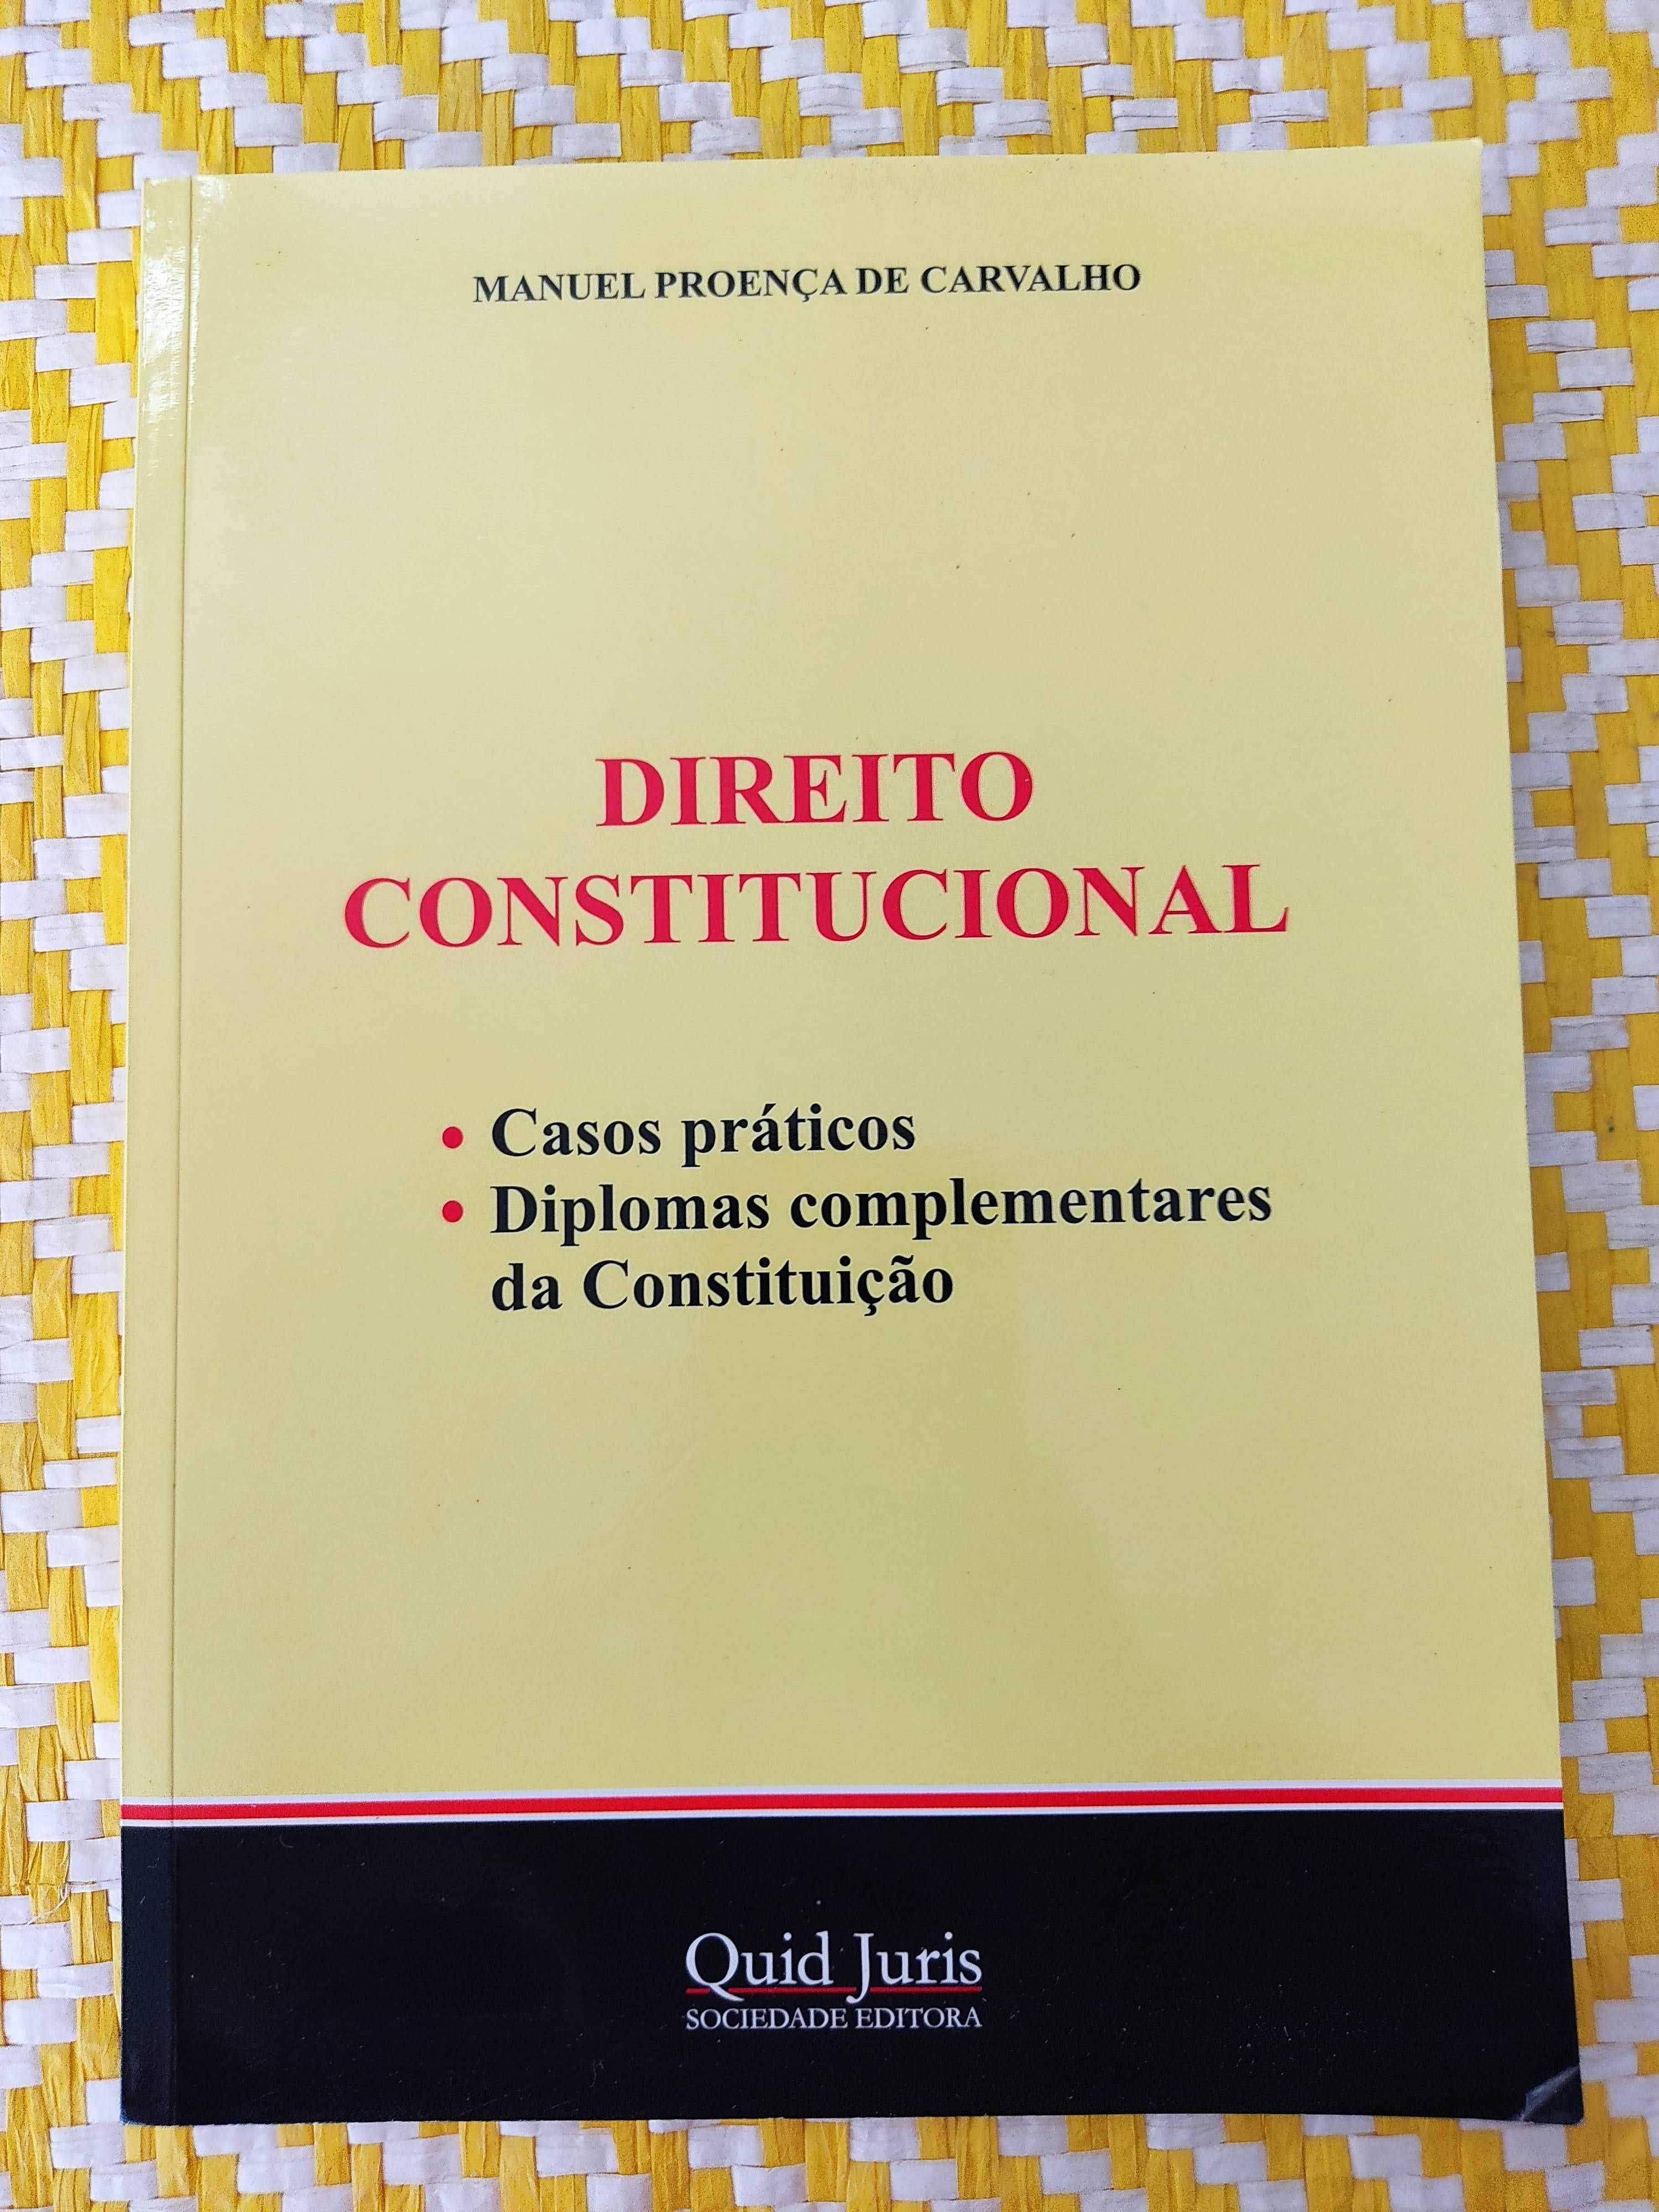 DIREITO CONSTITUCIONAL - Casos práticos
Manuel Proença de Carvalho